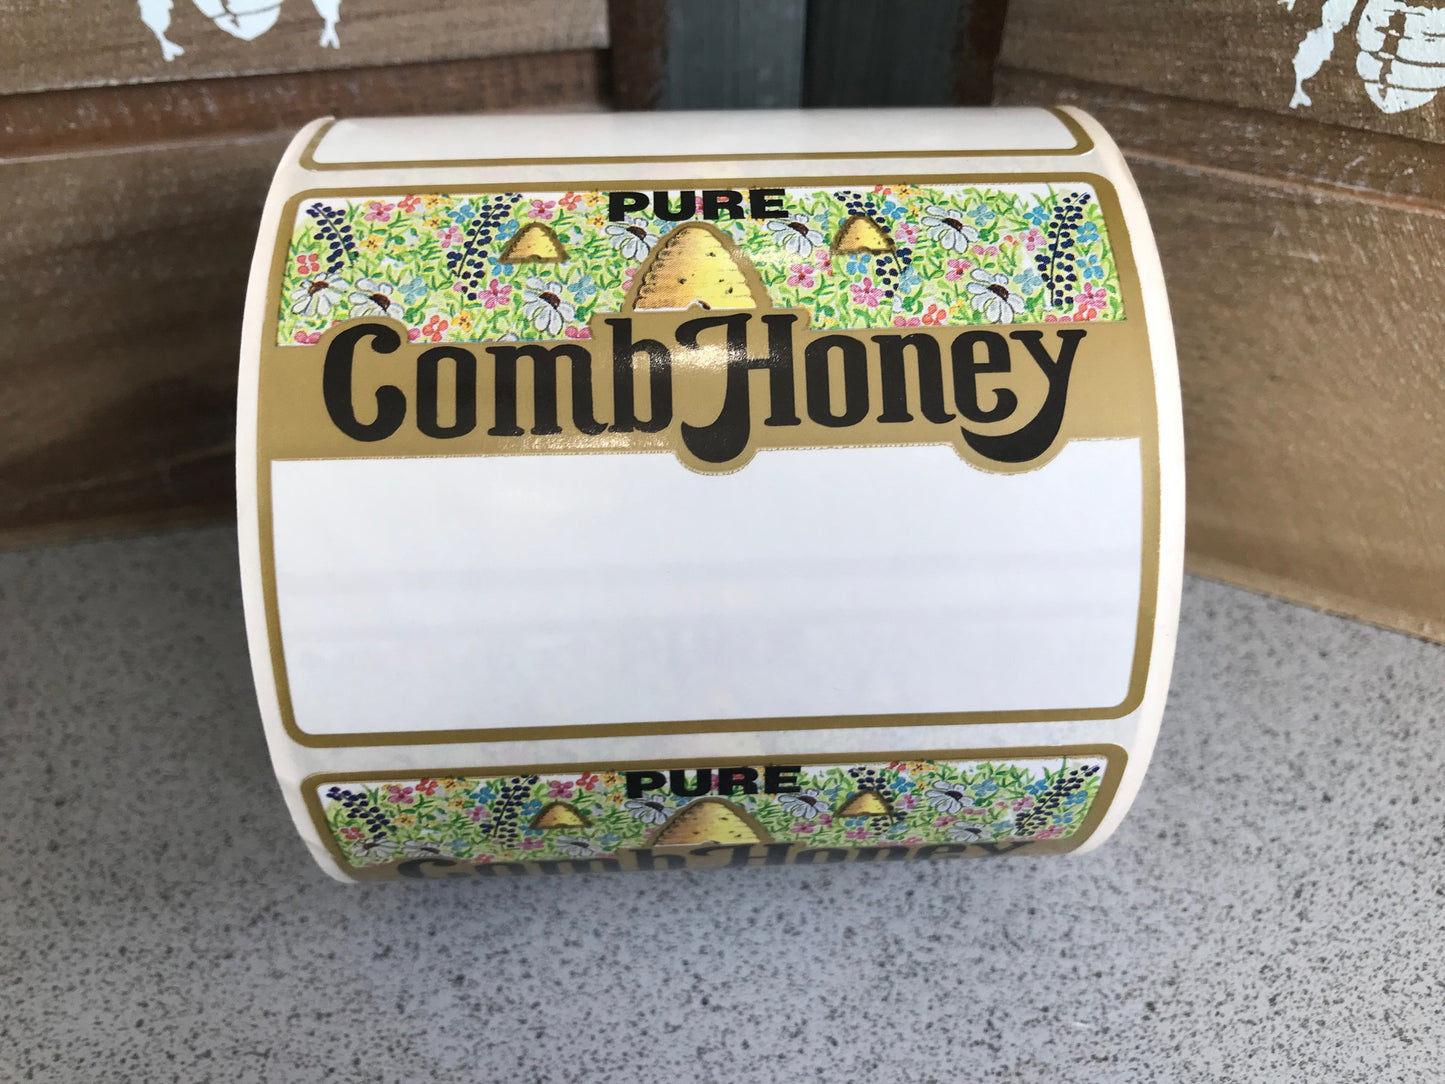 Comb Honey labels